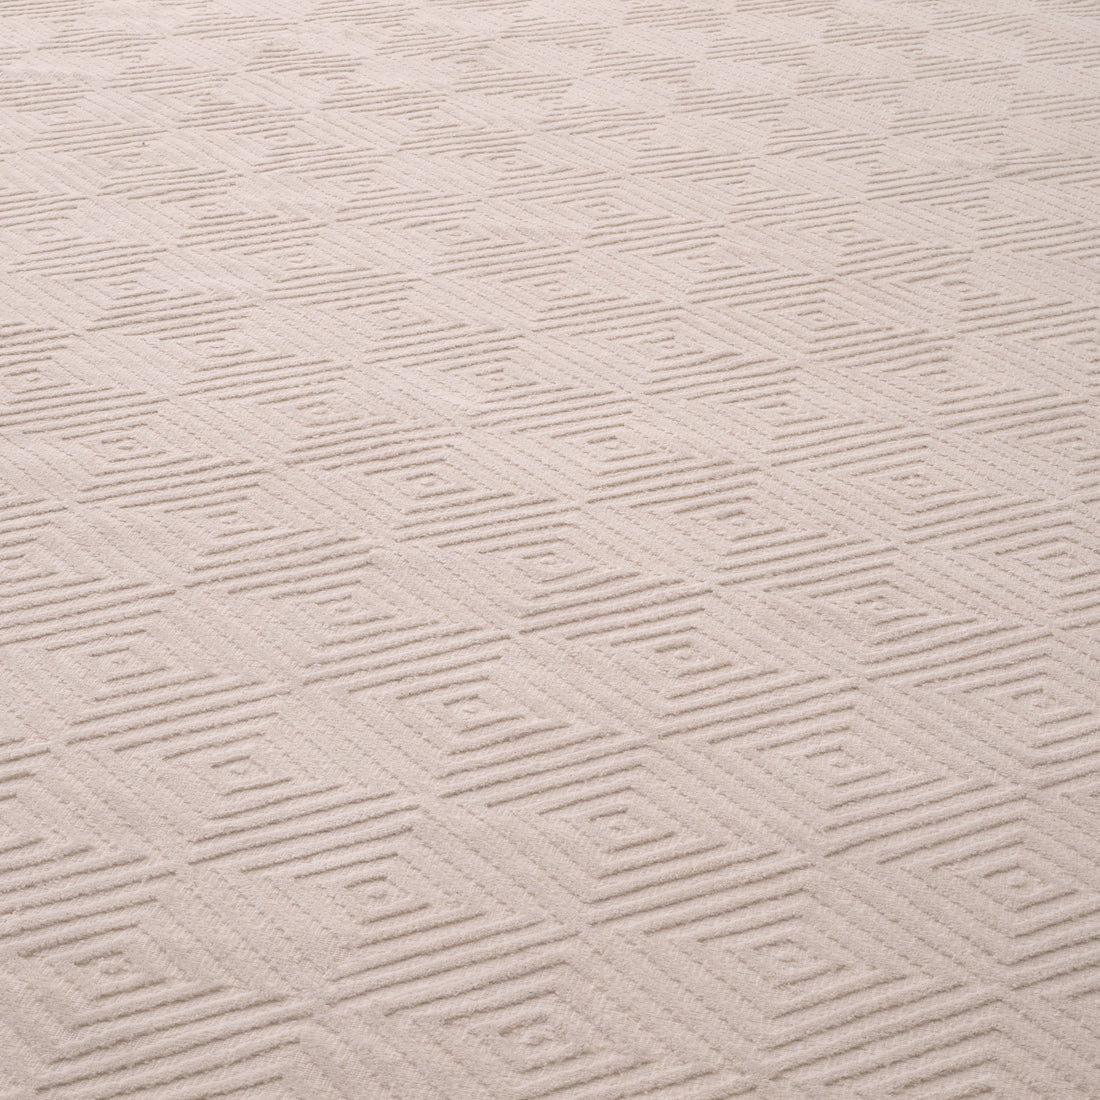 Outdoor Carpet Linara  300 x 400 cm